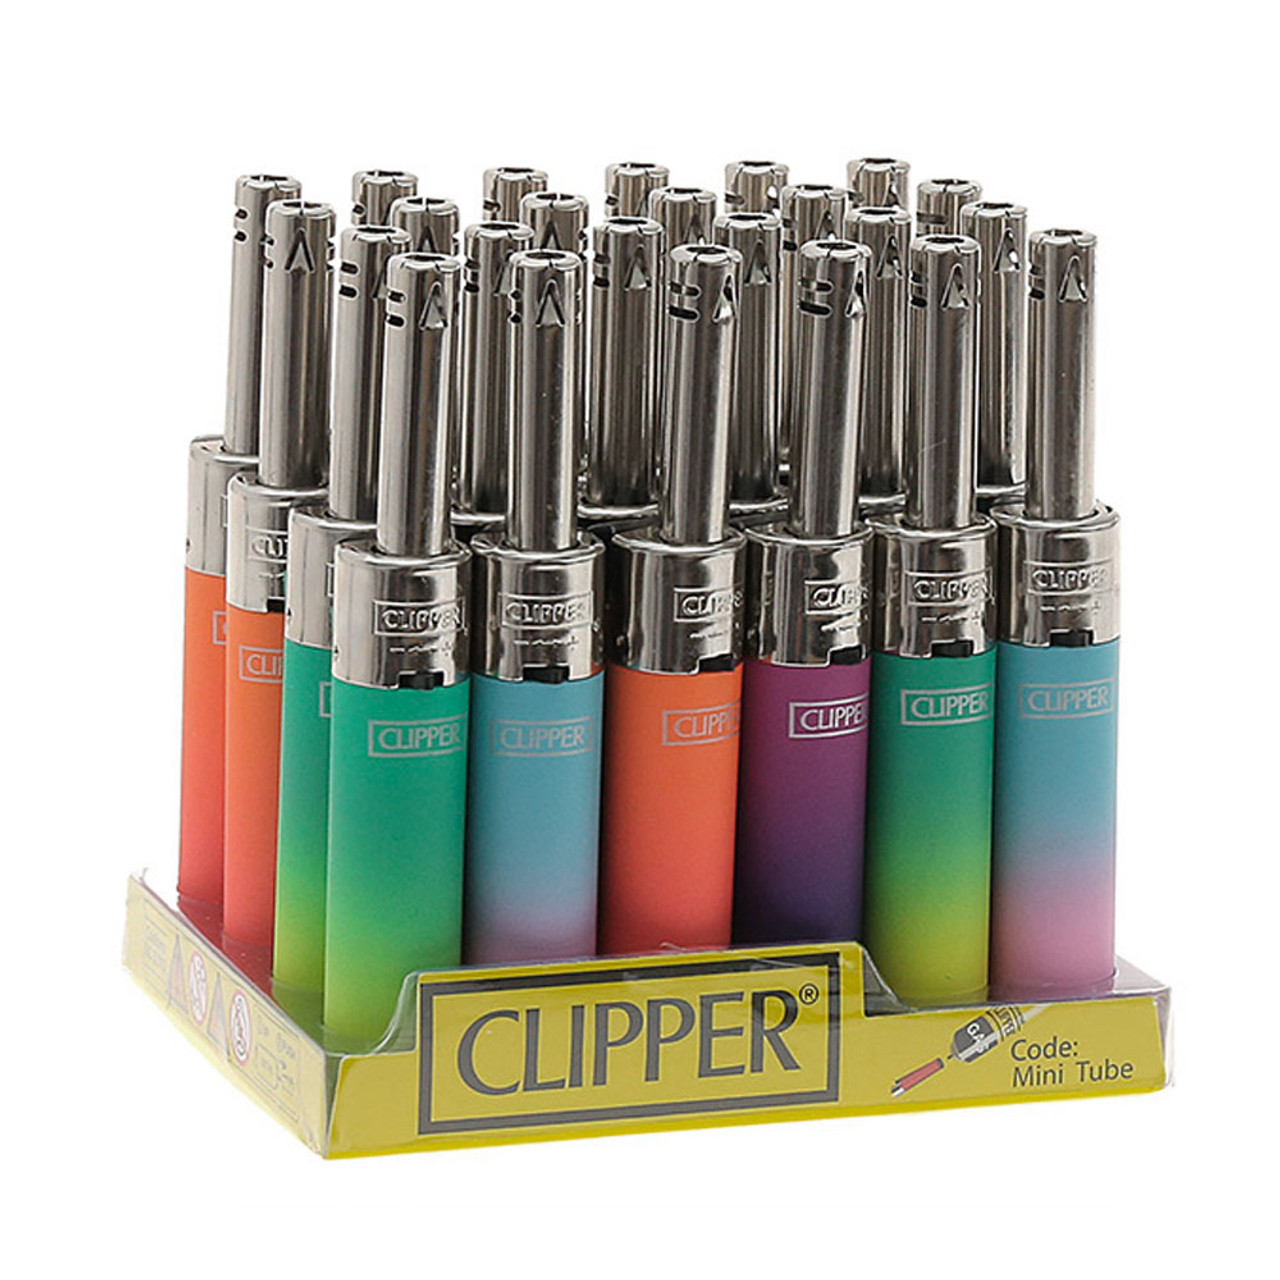 Clipper Lighter Minitube Gradient Color- Paquete de 3 - Encendedor de  butano seguro Clipper - Encendedores recargables en varios colores de moda  